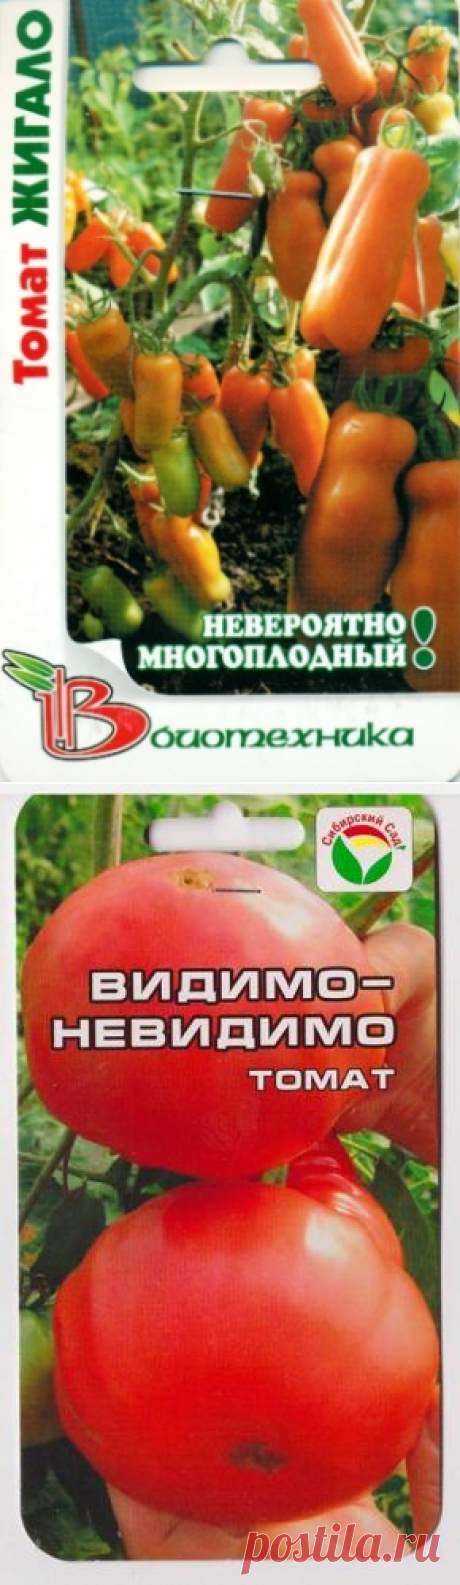 Сорта помидоров с фото и описанием - лучшие урожайные сорта! - Люблю свой сад